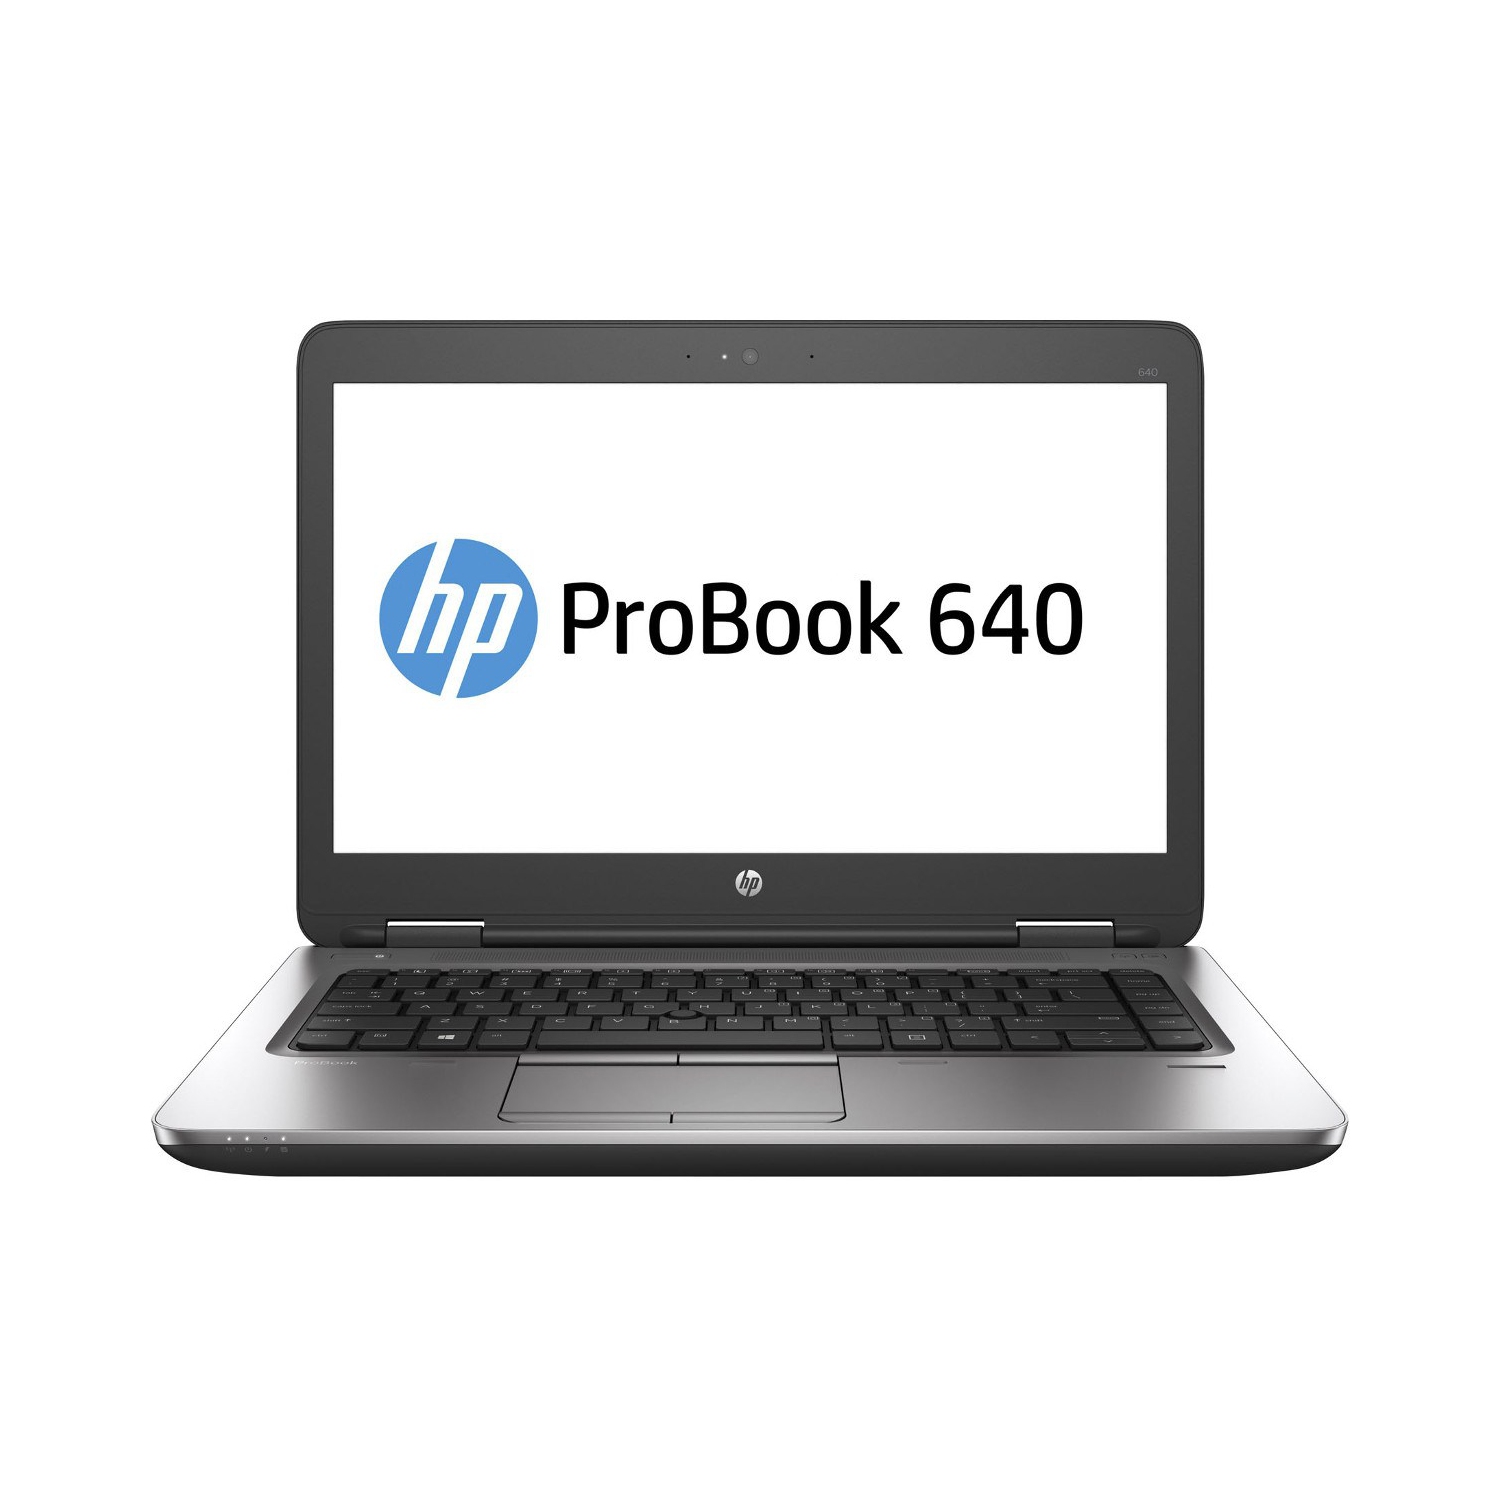 Refurbished (Excellent) - HP ProBook 640 G2 14" Laptop, Intel Core i7 6600U up to 3.4 GHz, 8G DDR4, 240G SSD, VGA, DP, Win10P64 (EN/FR/ES)